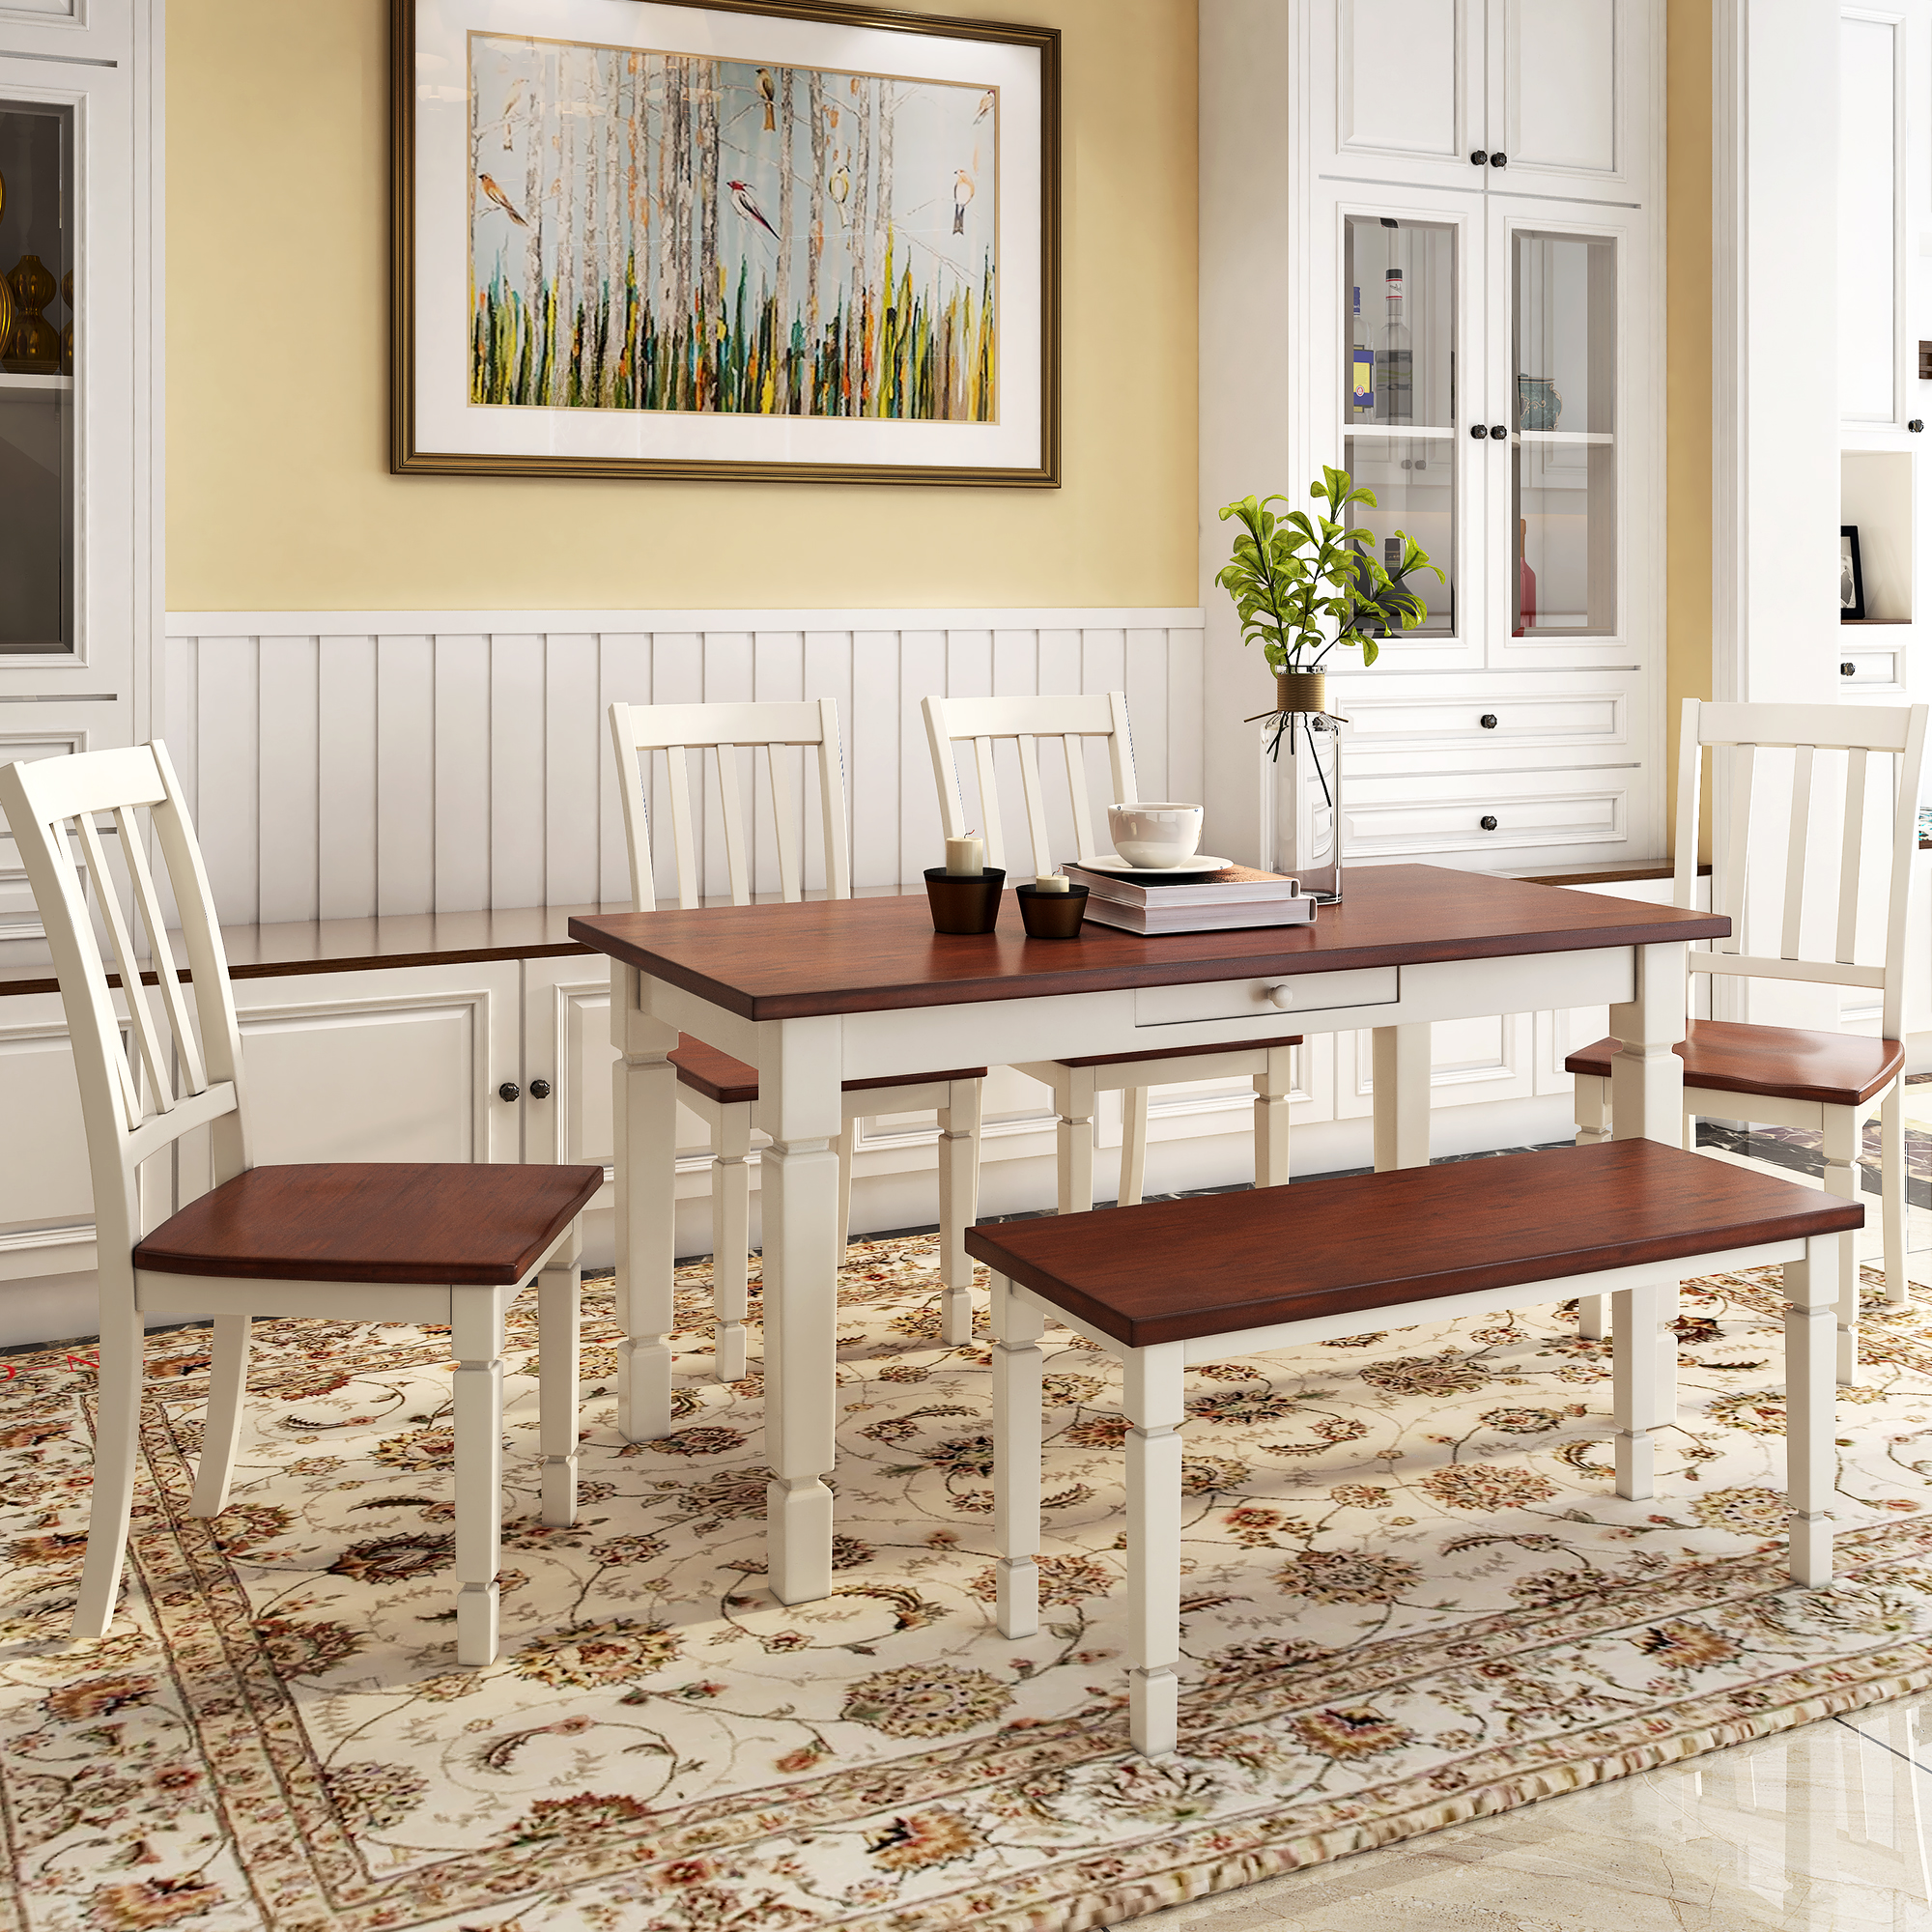 Stylish Wooden Furniture Kitchen Table Set - ST000063AAD